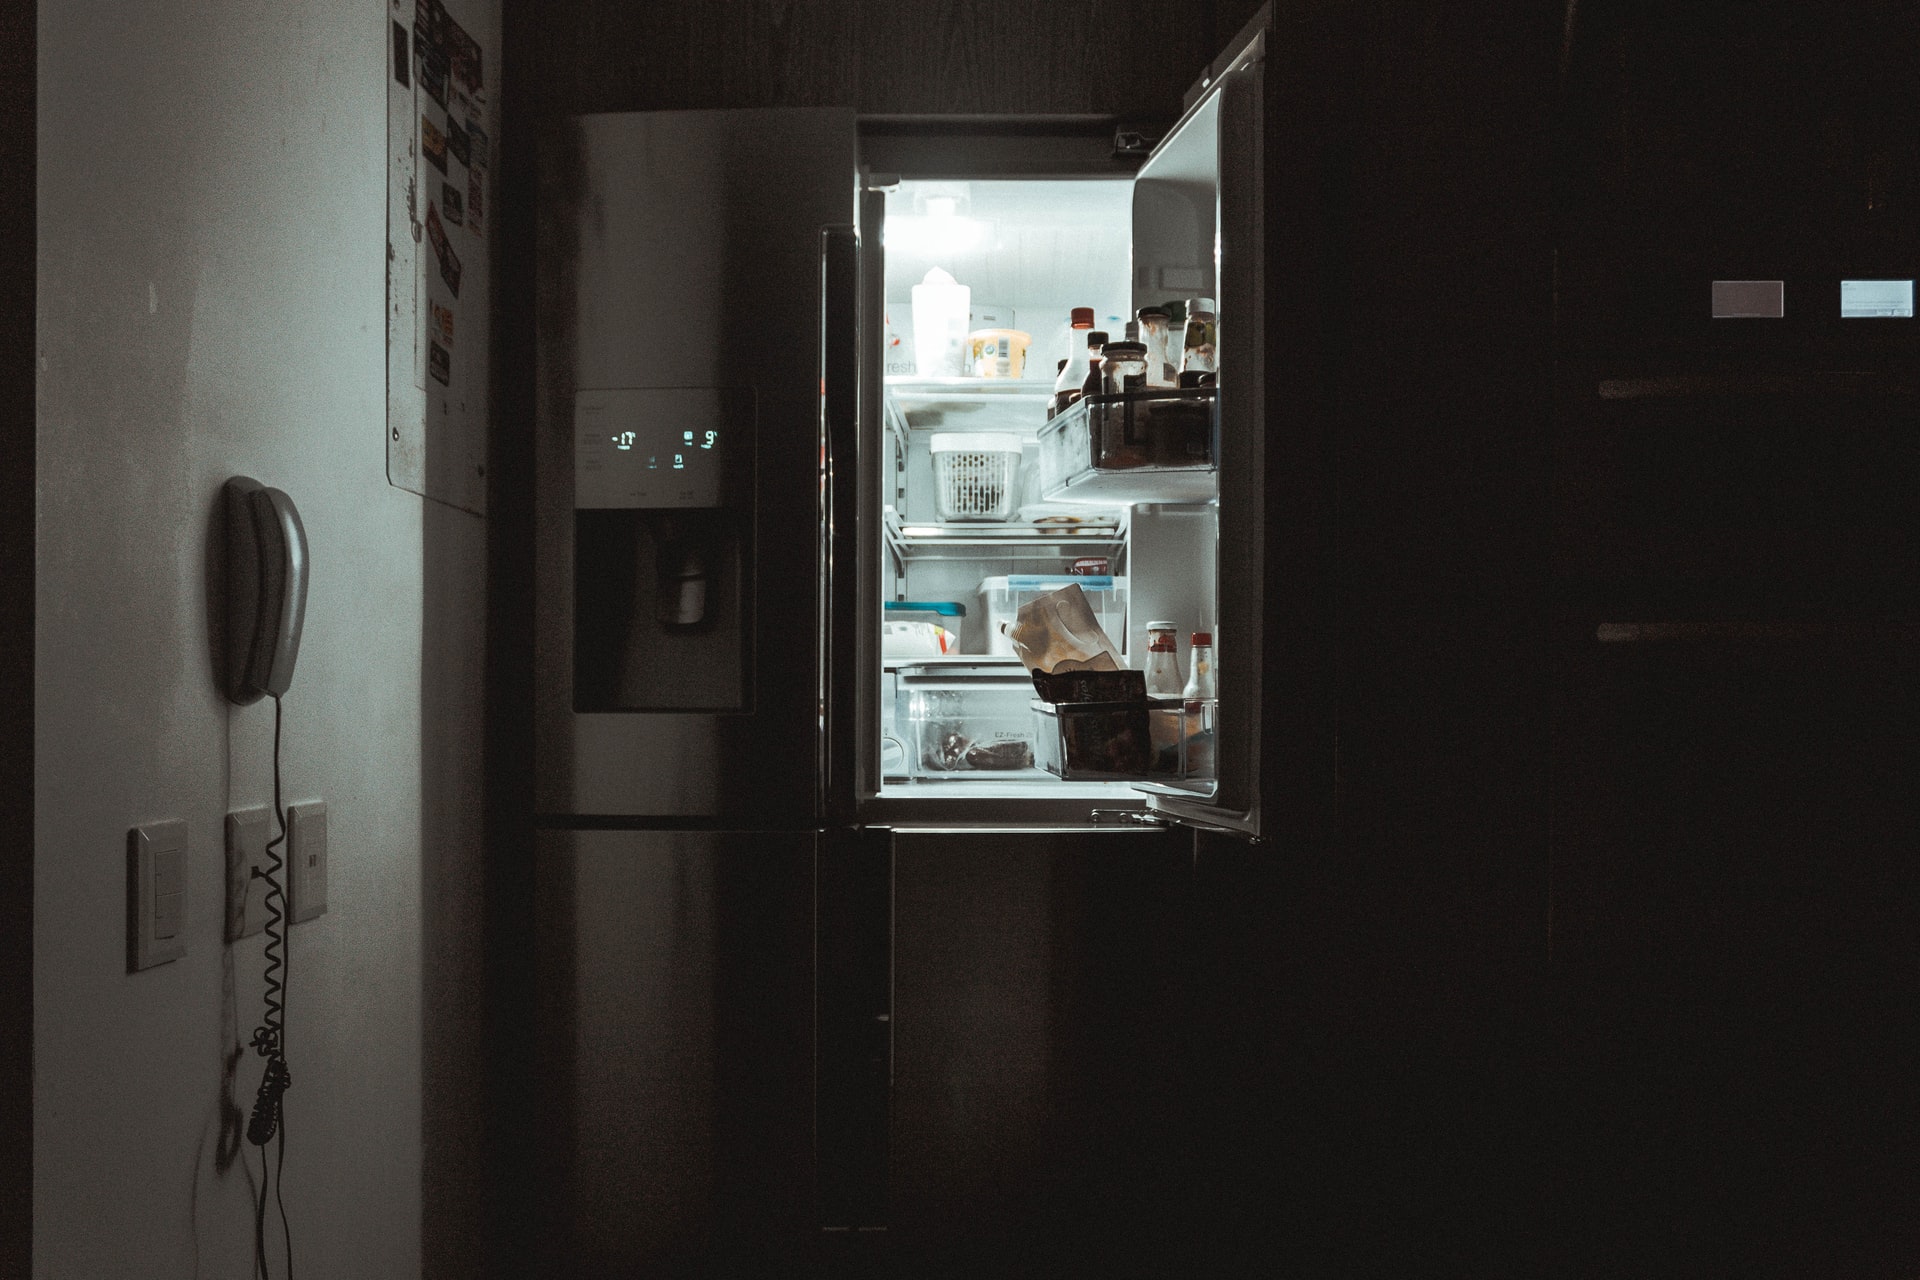 mold in fridge -- open refrigerator door in dark kitchen